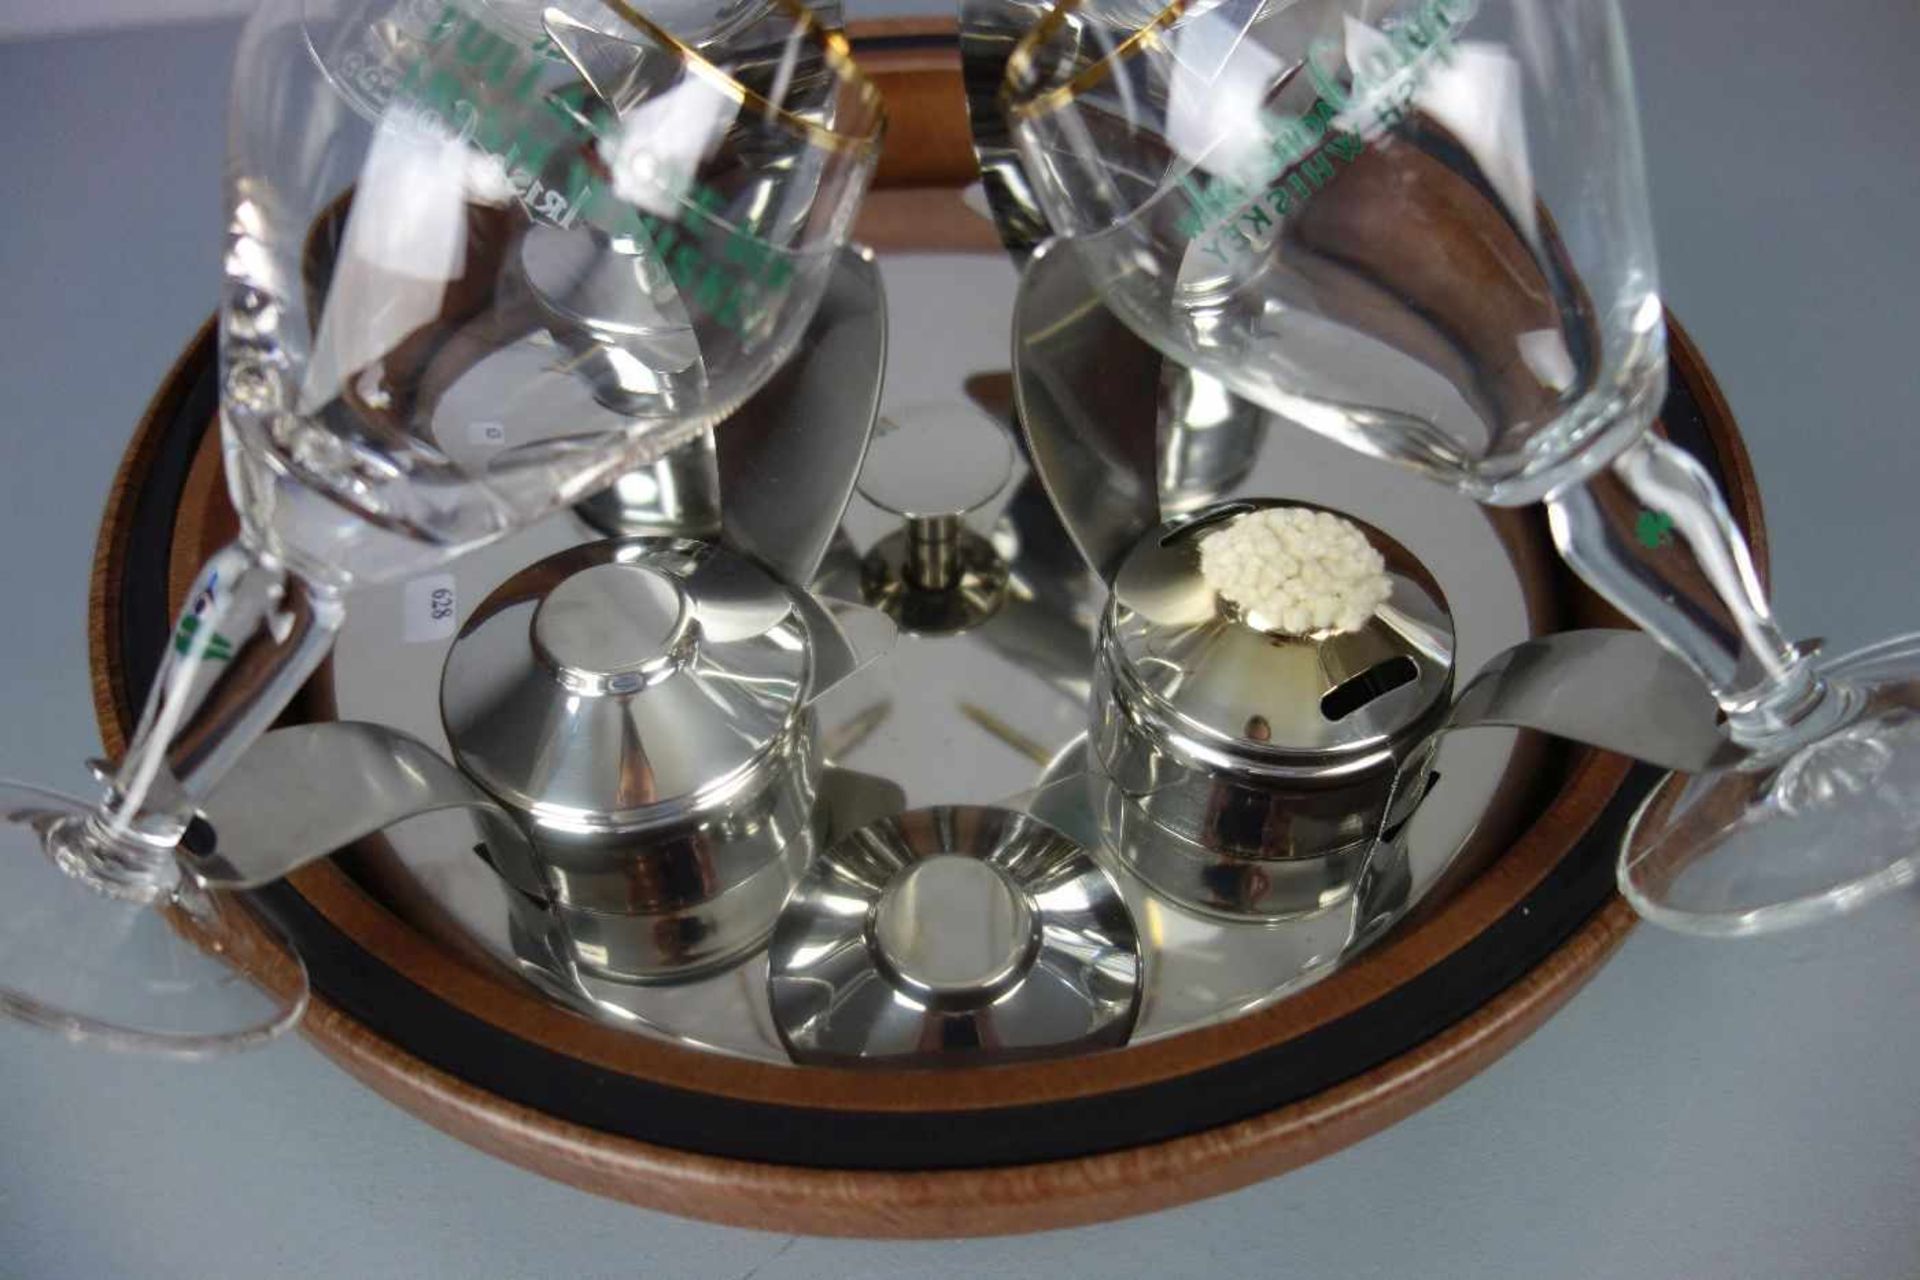 IRISH COFFEE SET mit 5 Gläsern und batteriebetriebenem Karussell mit Brennern zum Vorwärmen der - Bild 4 aus 4